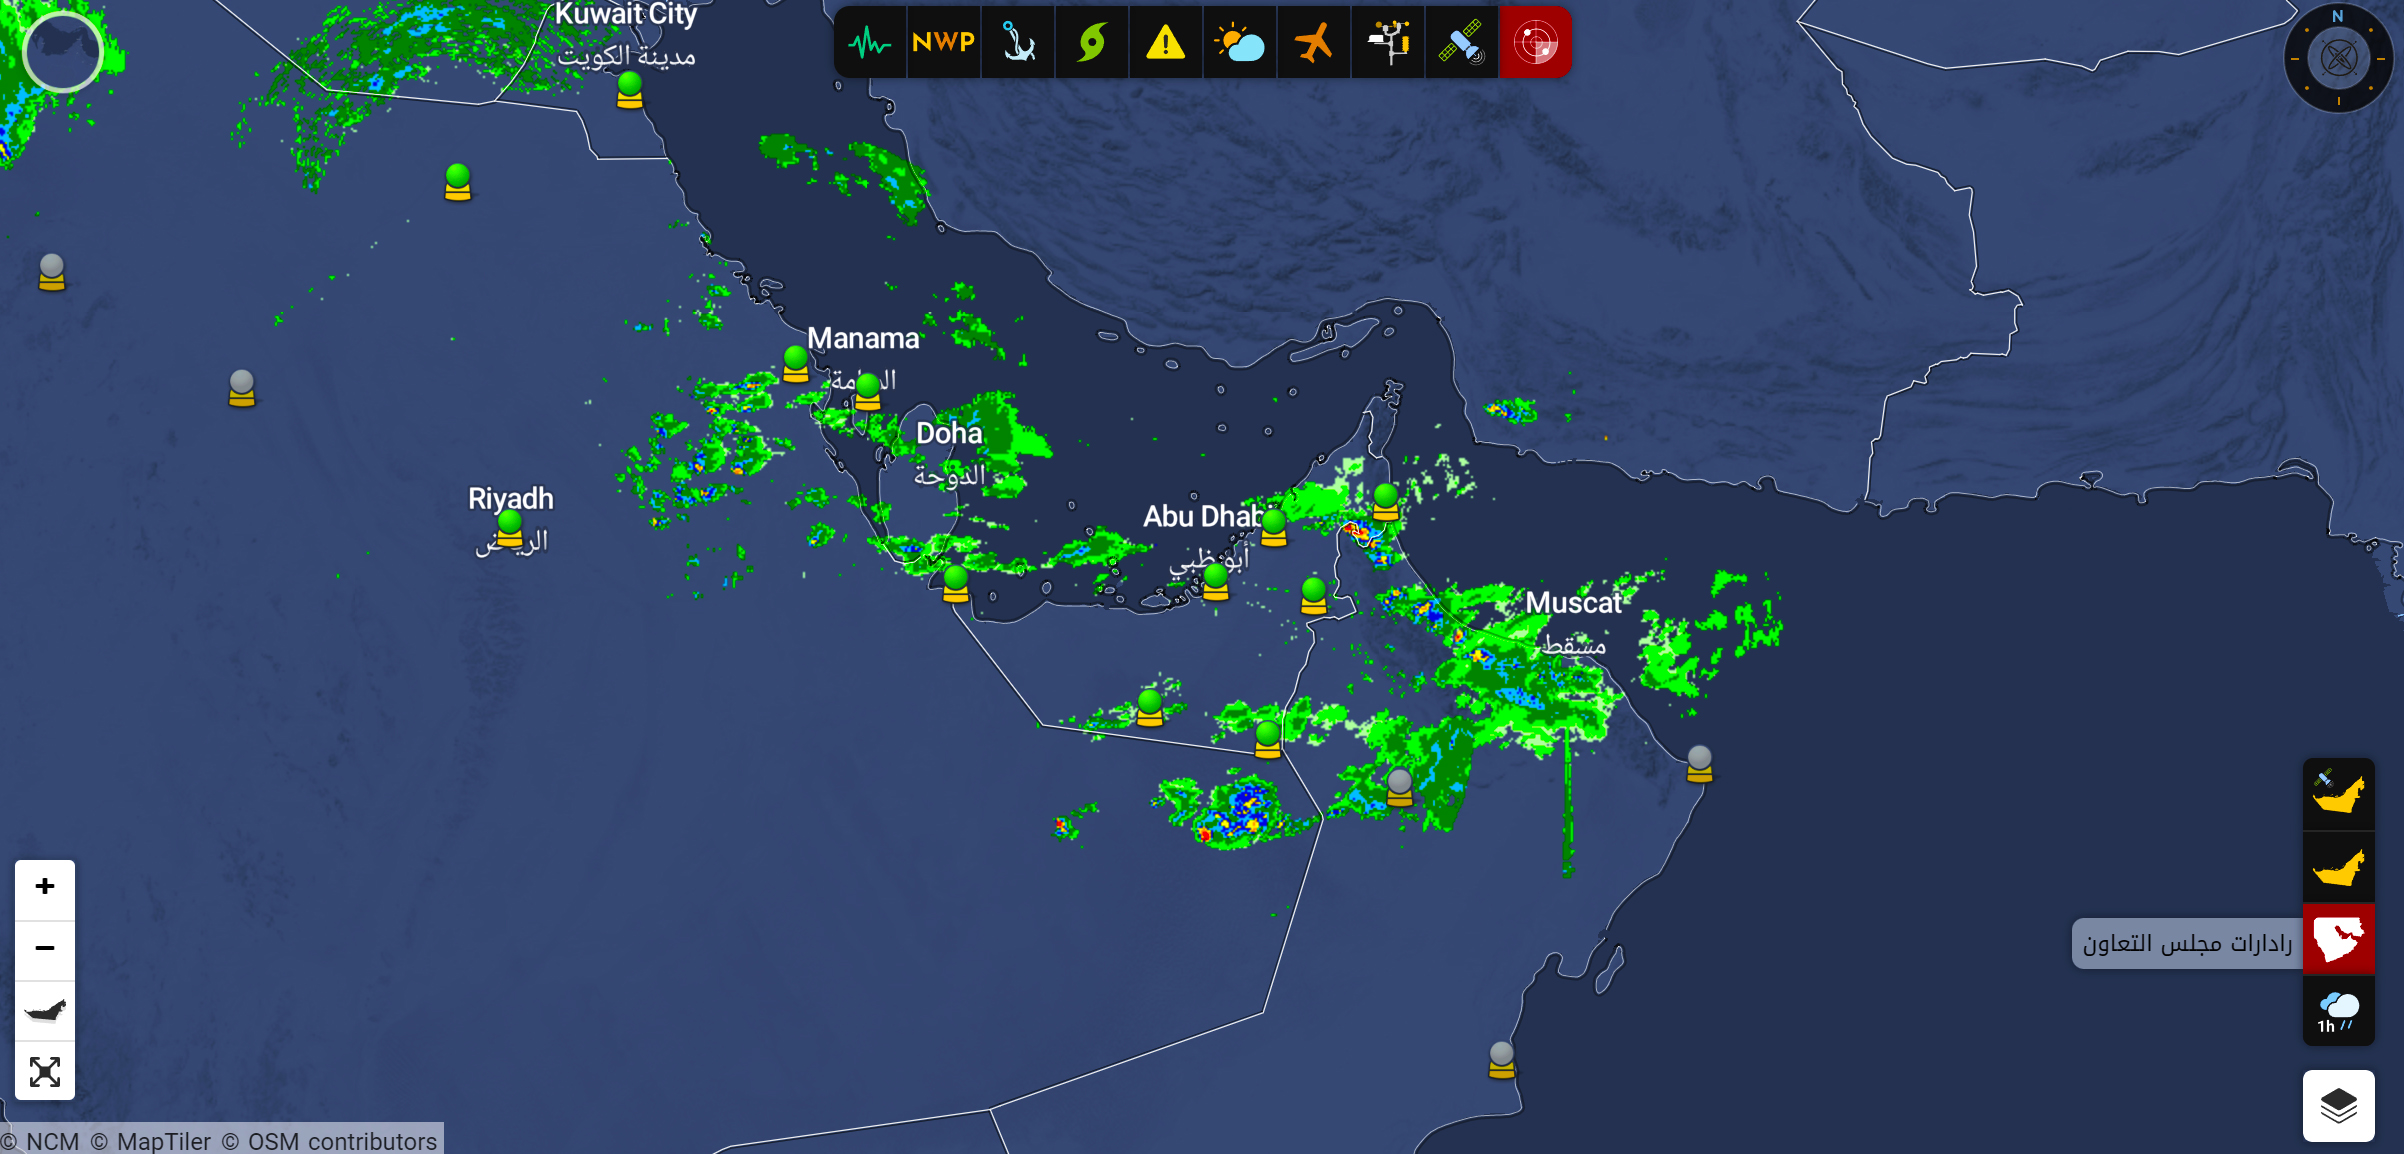 Neueste offizielle Karten, die Sturmereignisse in den gesamten VAE zeigen, einschließlich der Zentren in Abu Dhabi und Dubai. Werden die Schulen jetzt schließen?